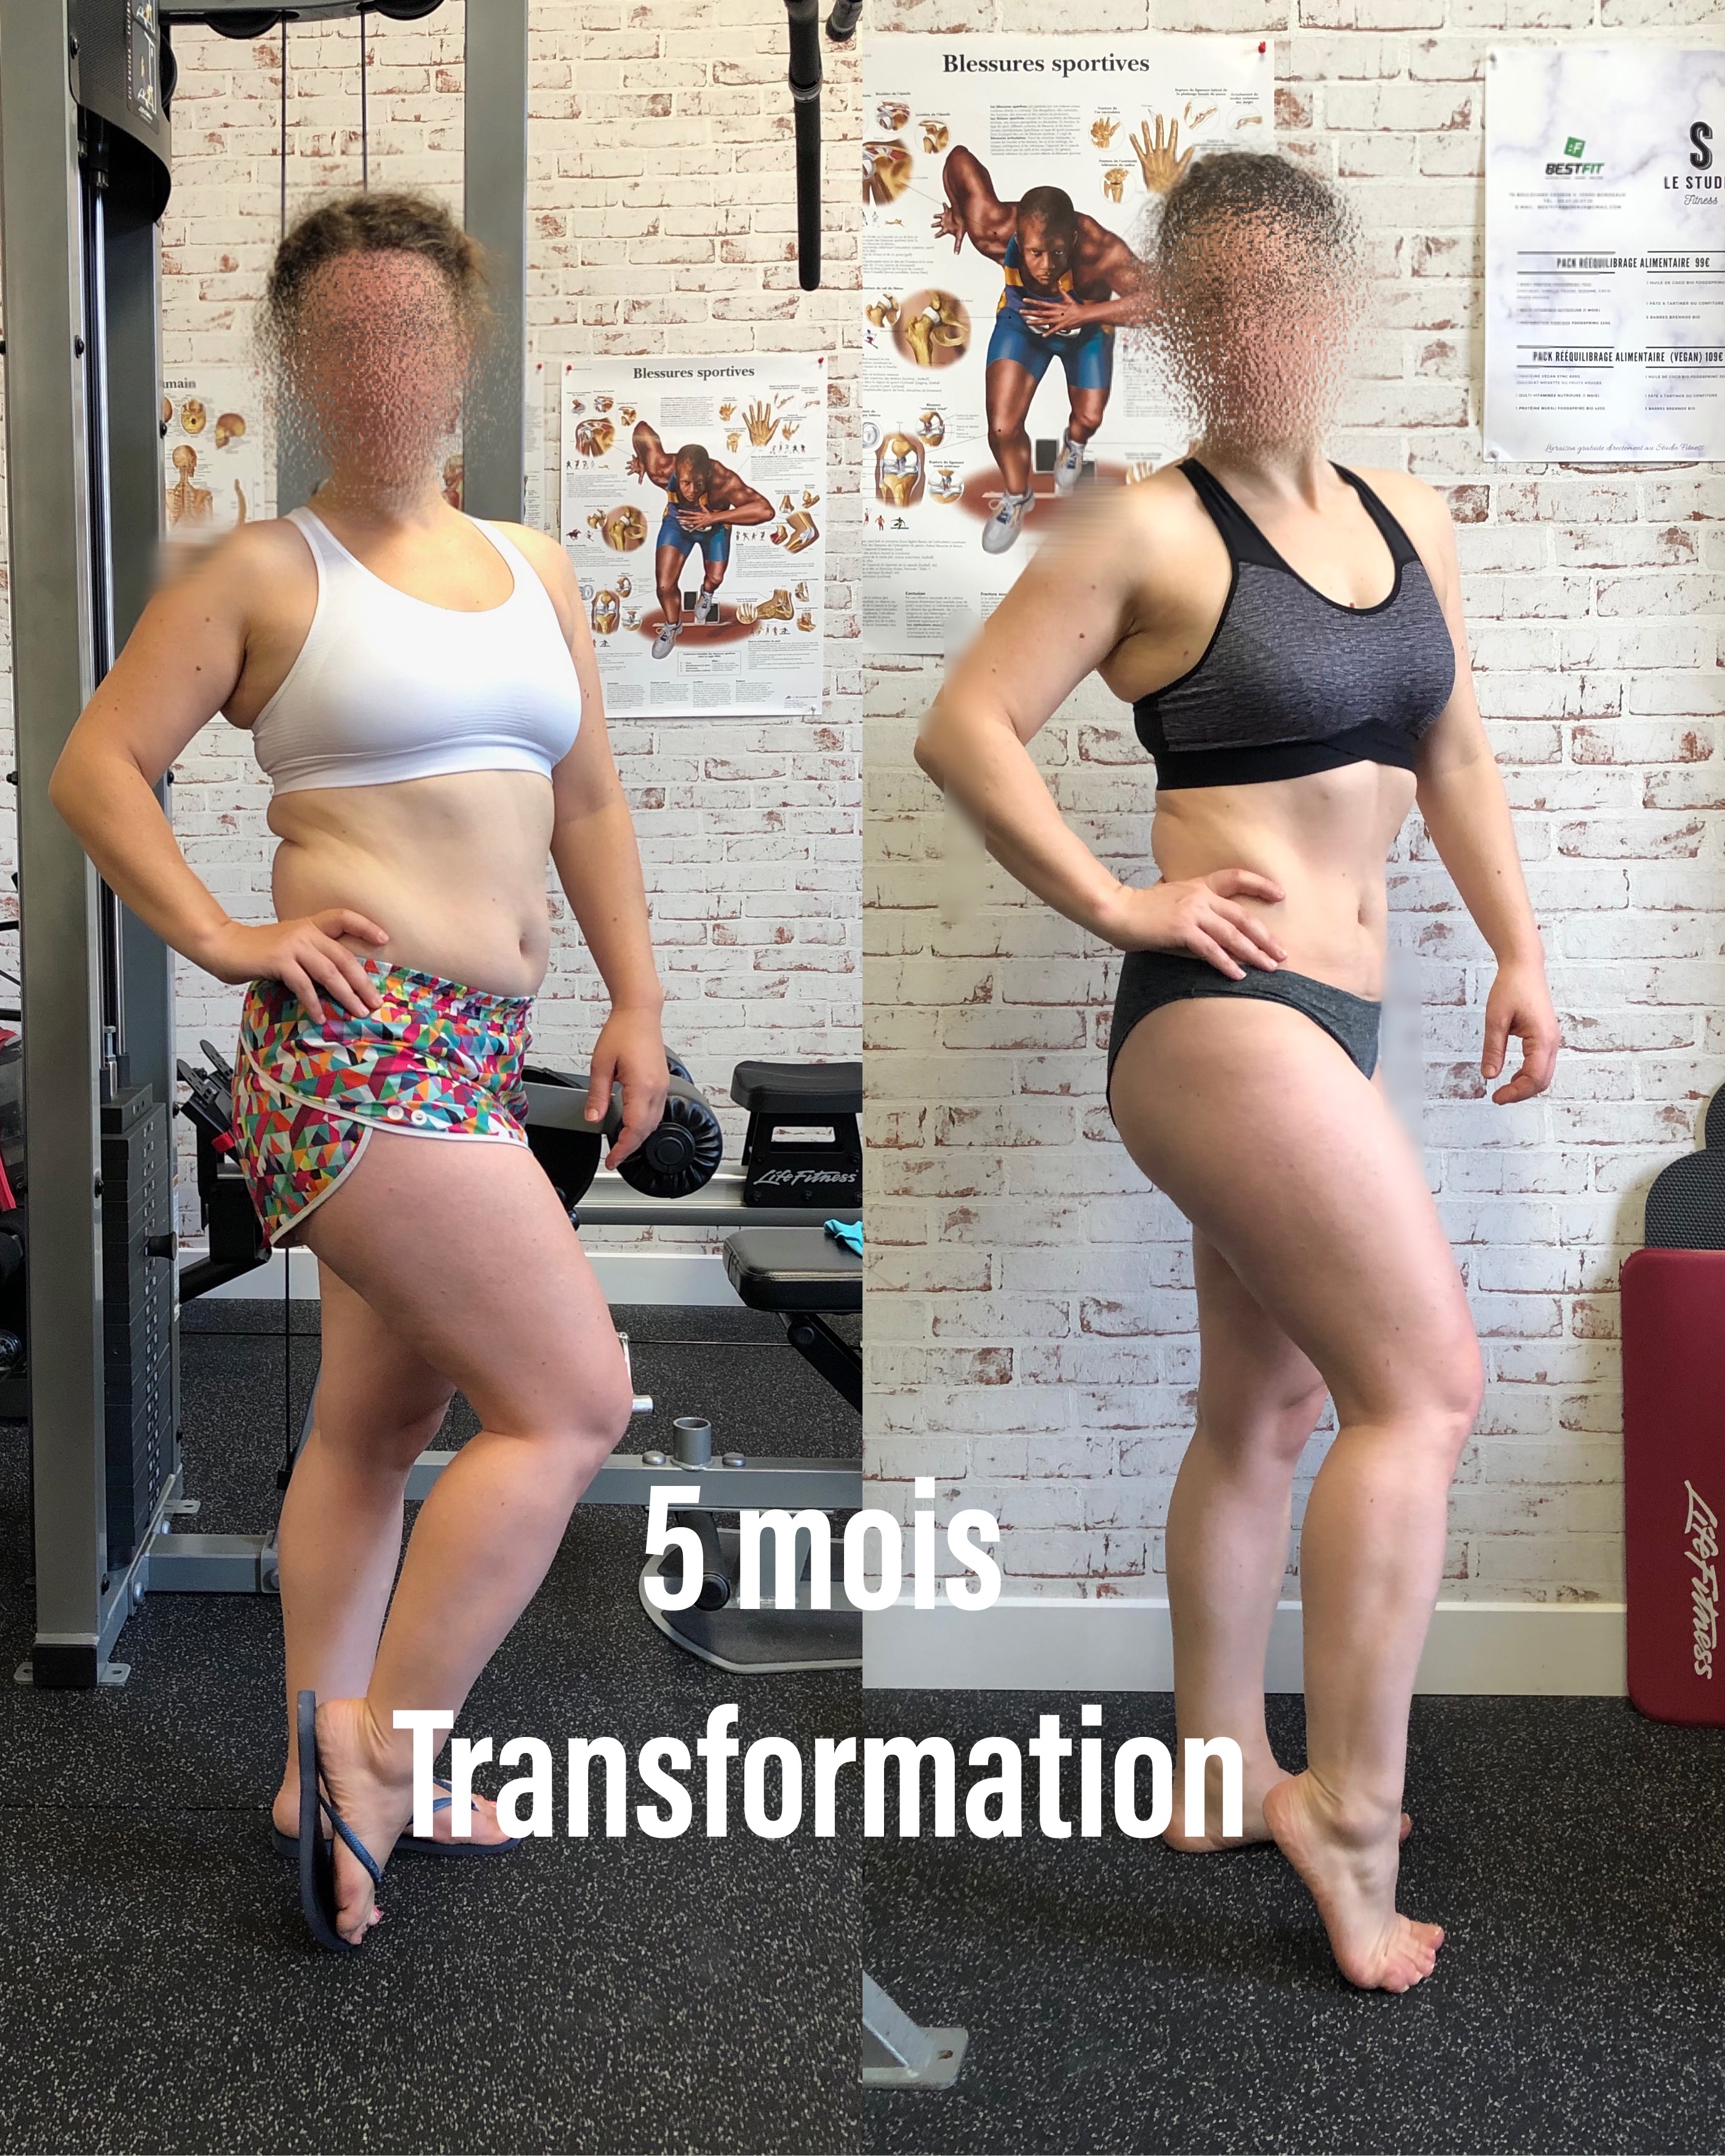 5 mois Transformation pour Sophie D.